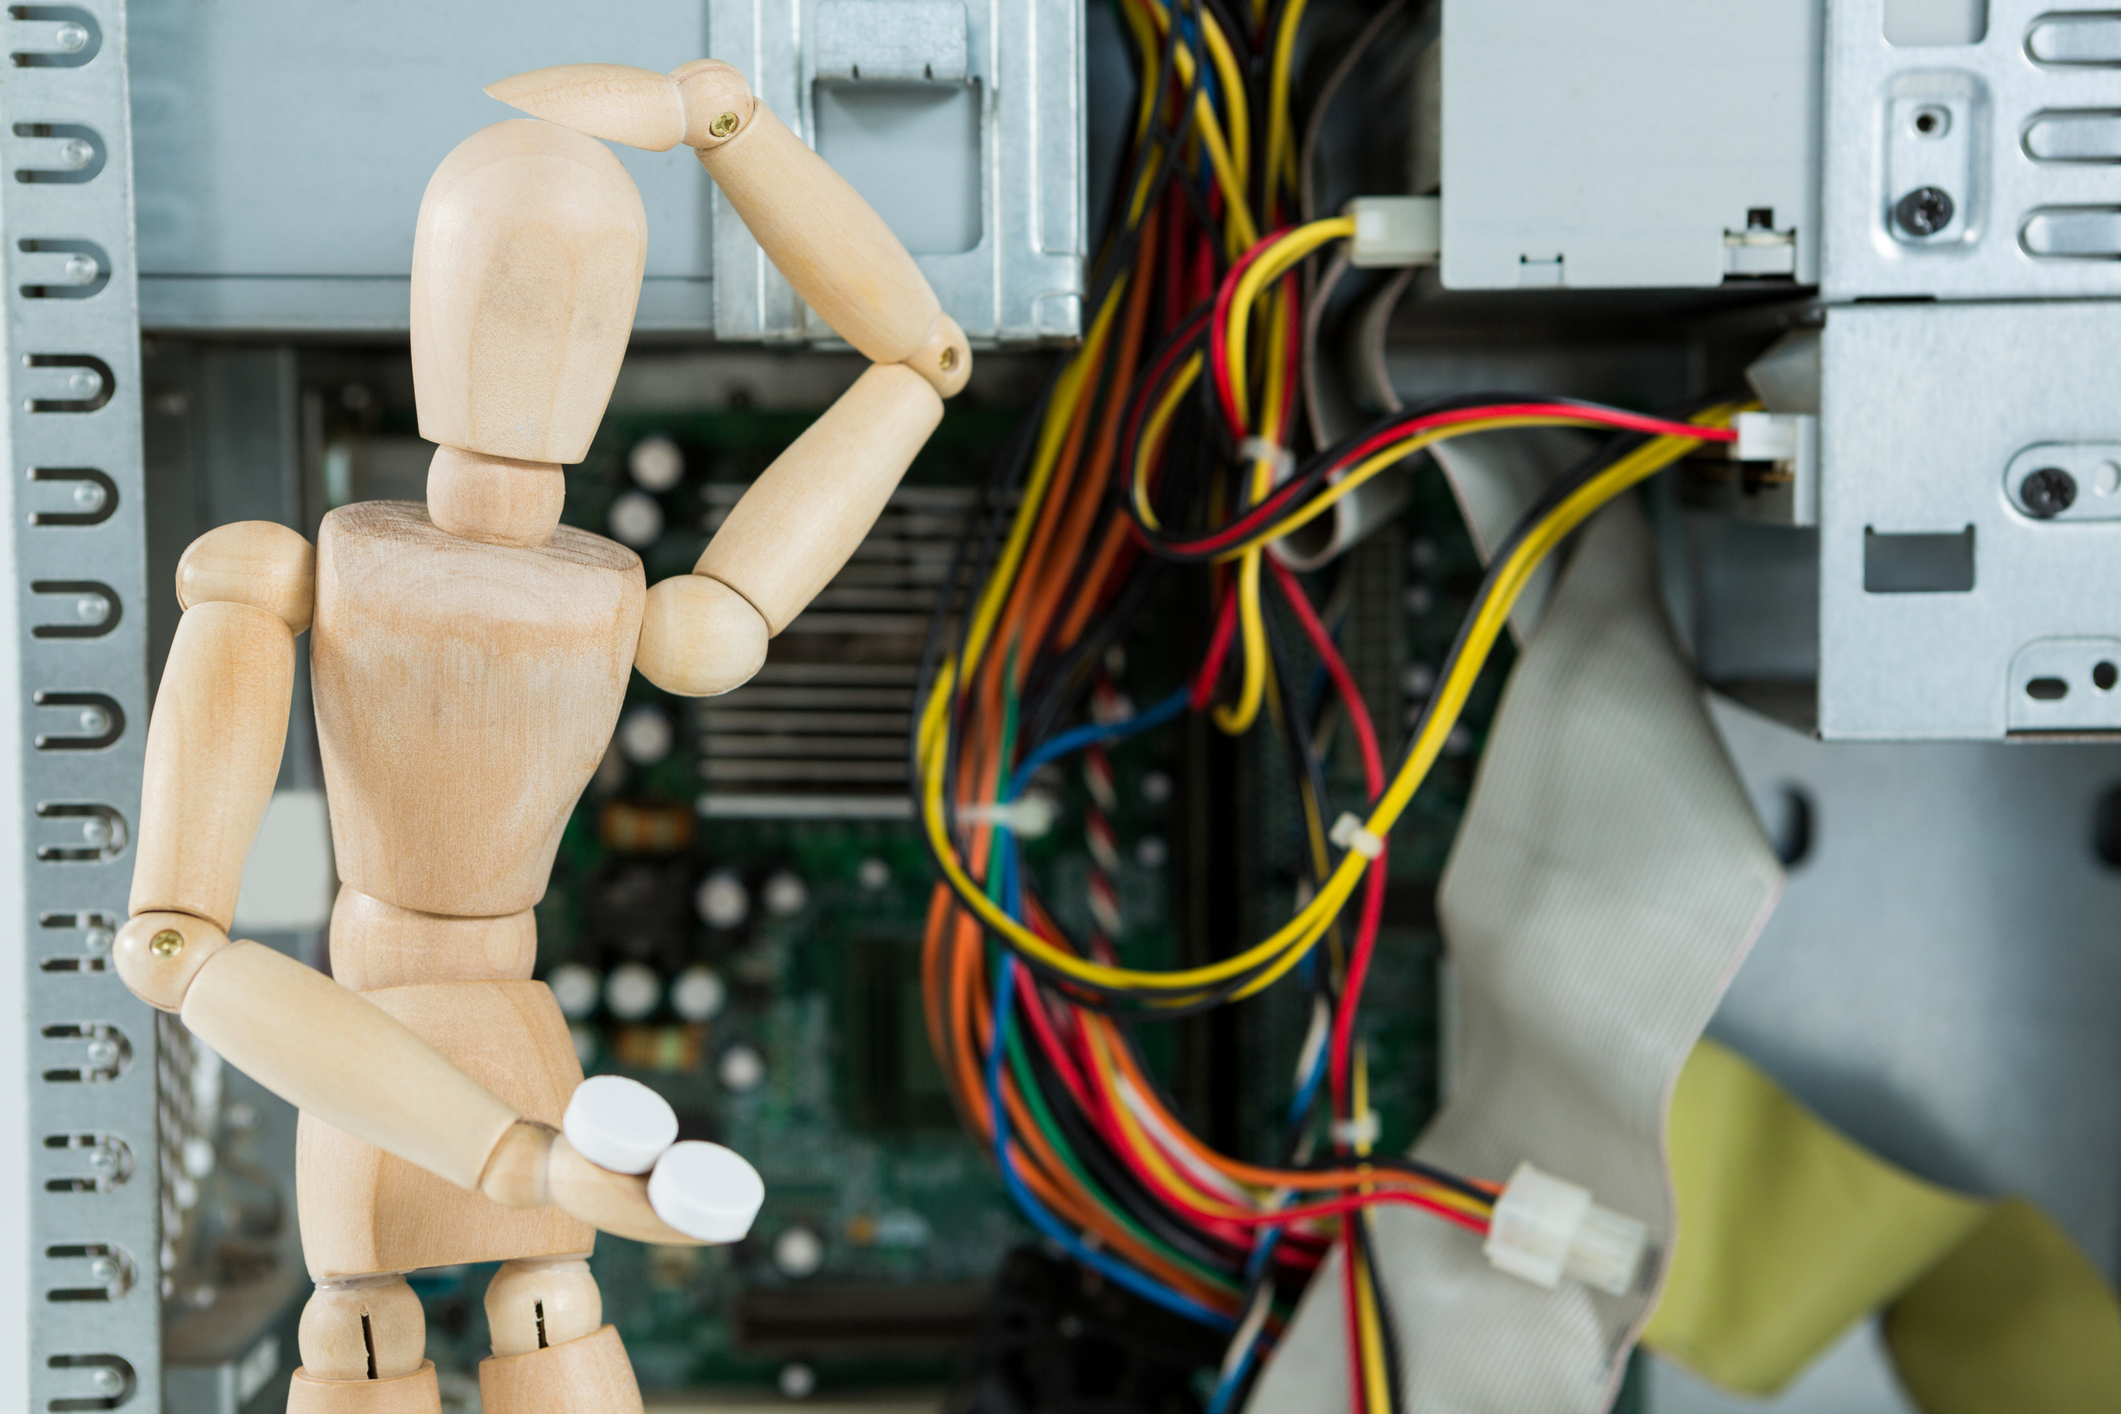 玩具人体模型在 IT 电线前摆出挠头的姿势。